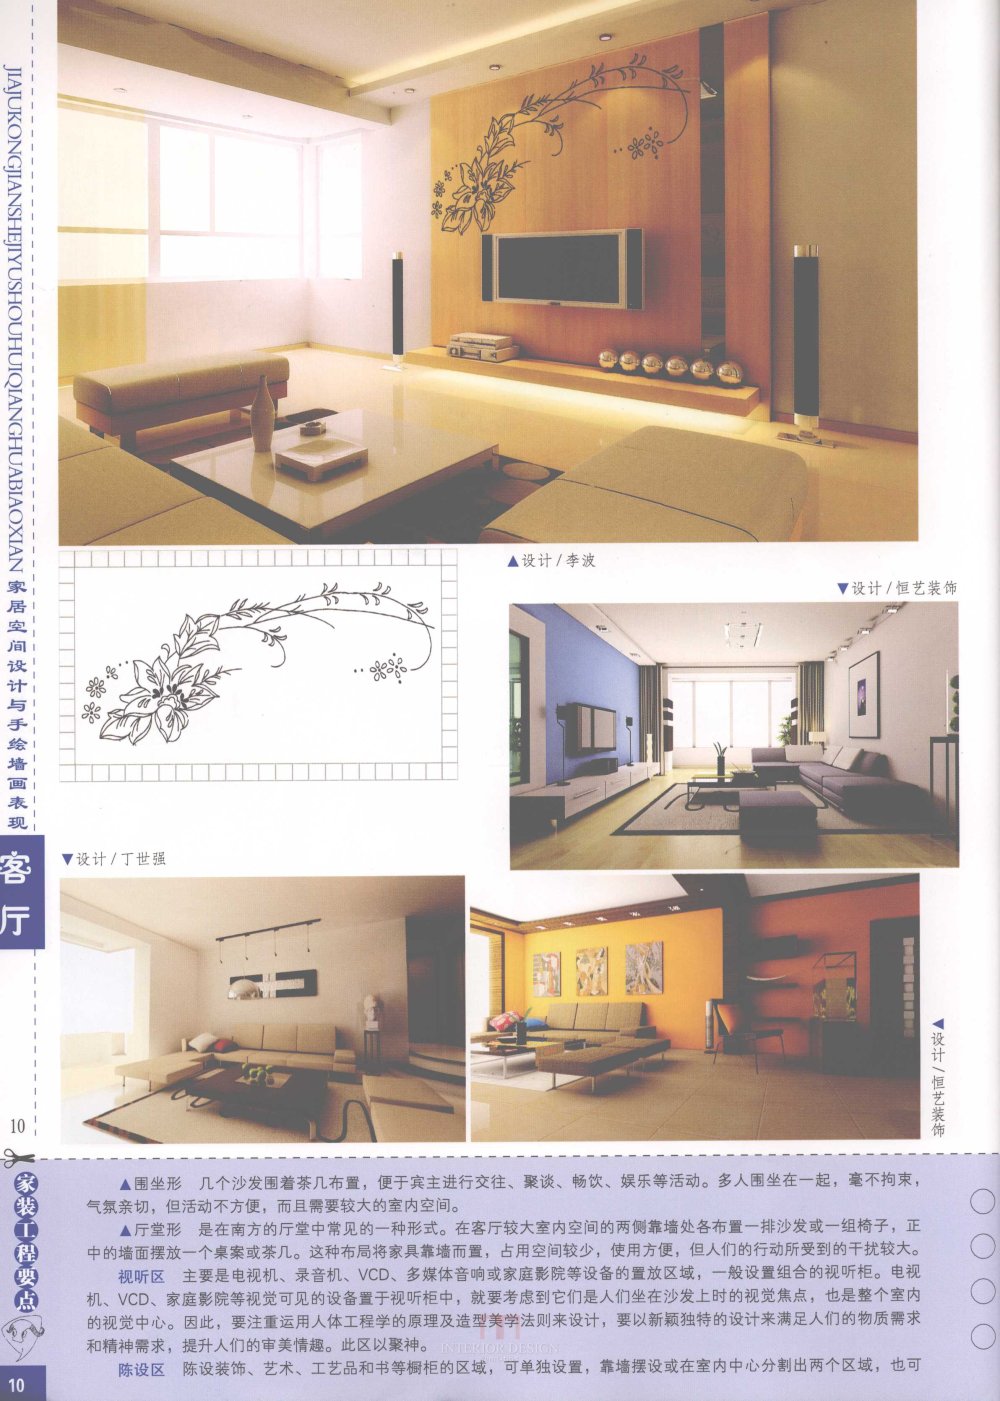 家居空间设计与手绘墙画表现客厅_家居空间设计与手绘墙画表现客厅-12.jpg